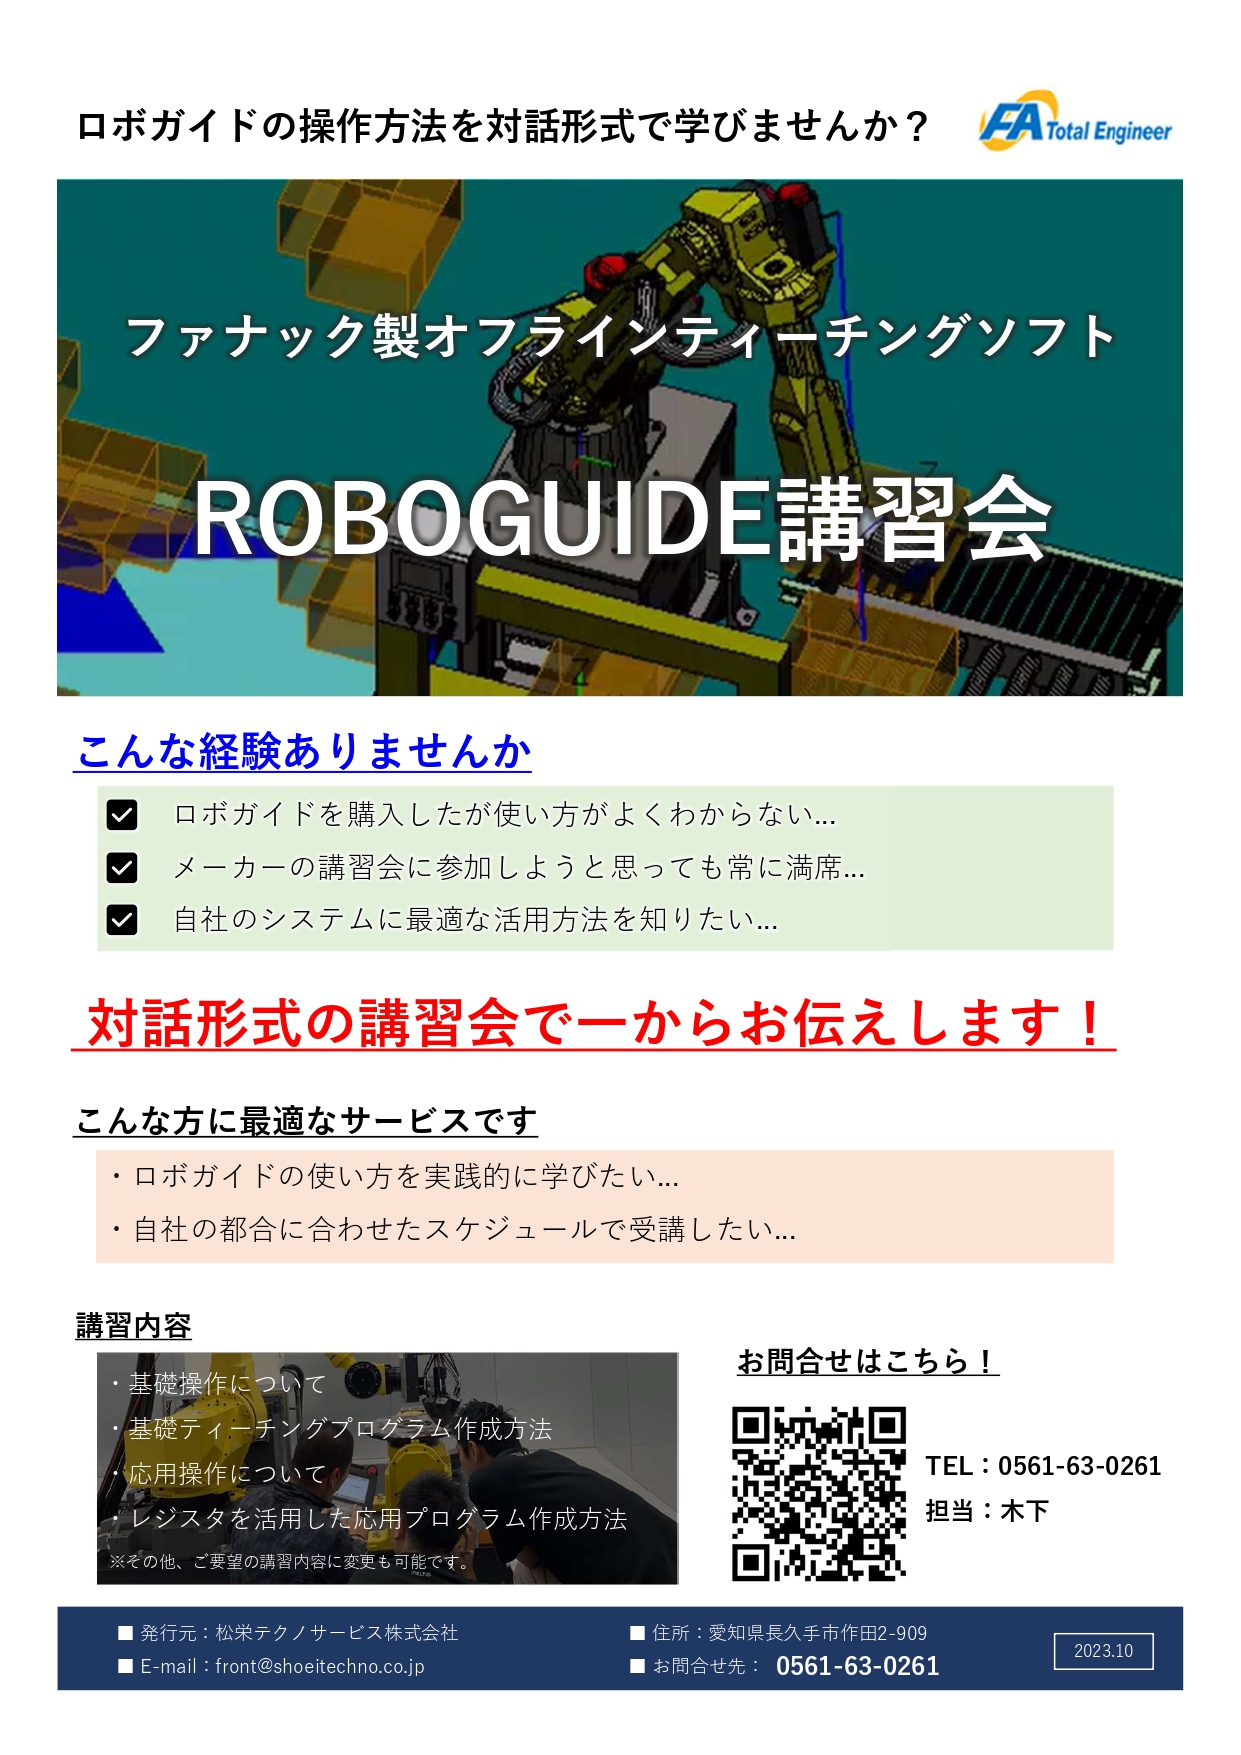 ROBOGUIDE（ロボガイド）操作講習会 開催のお知らせ アイキャッチ